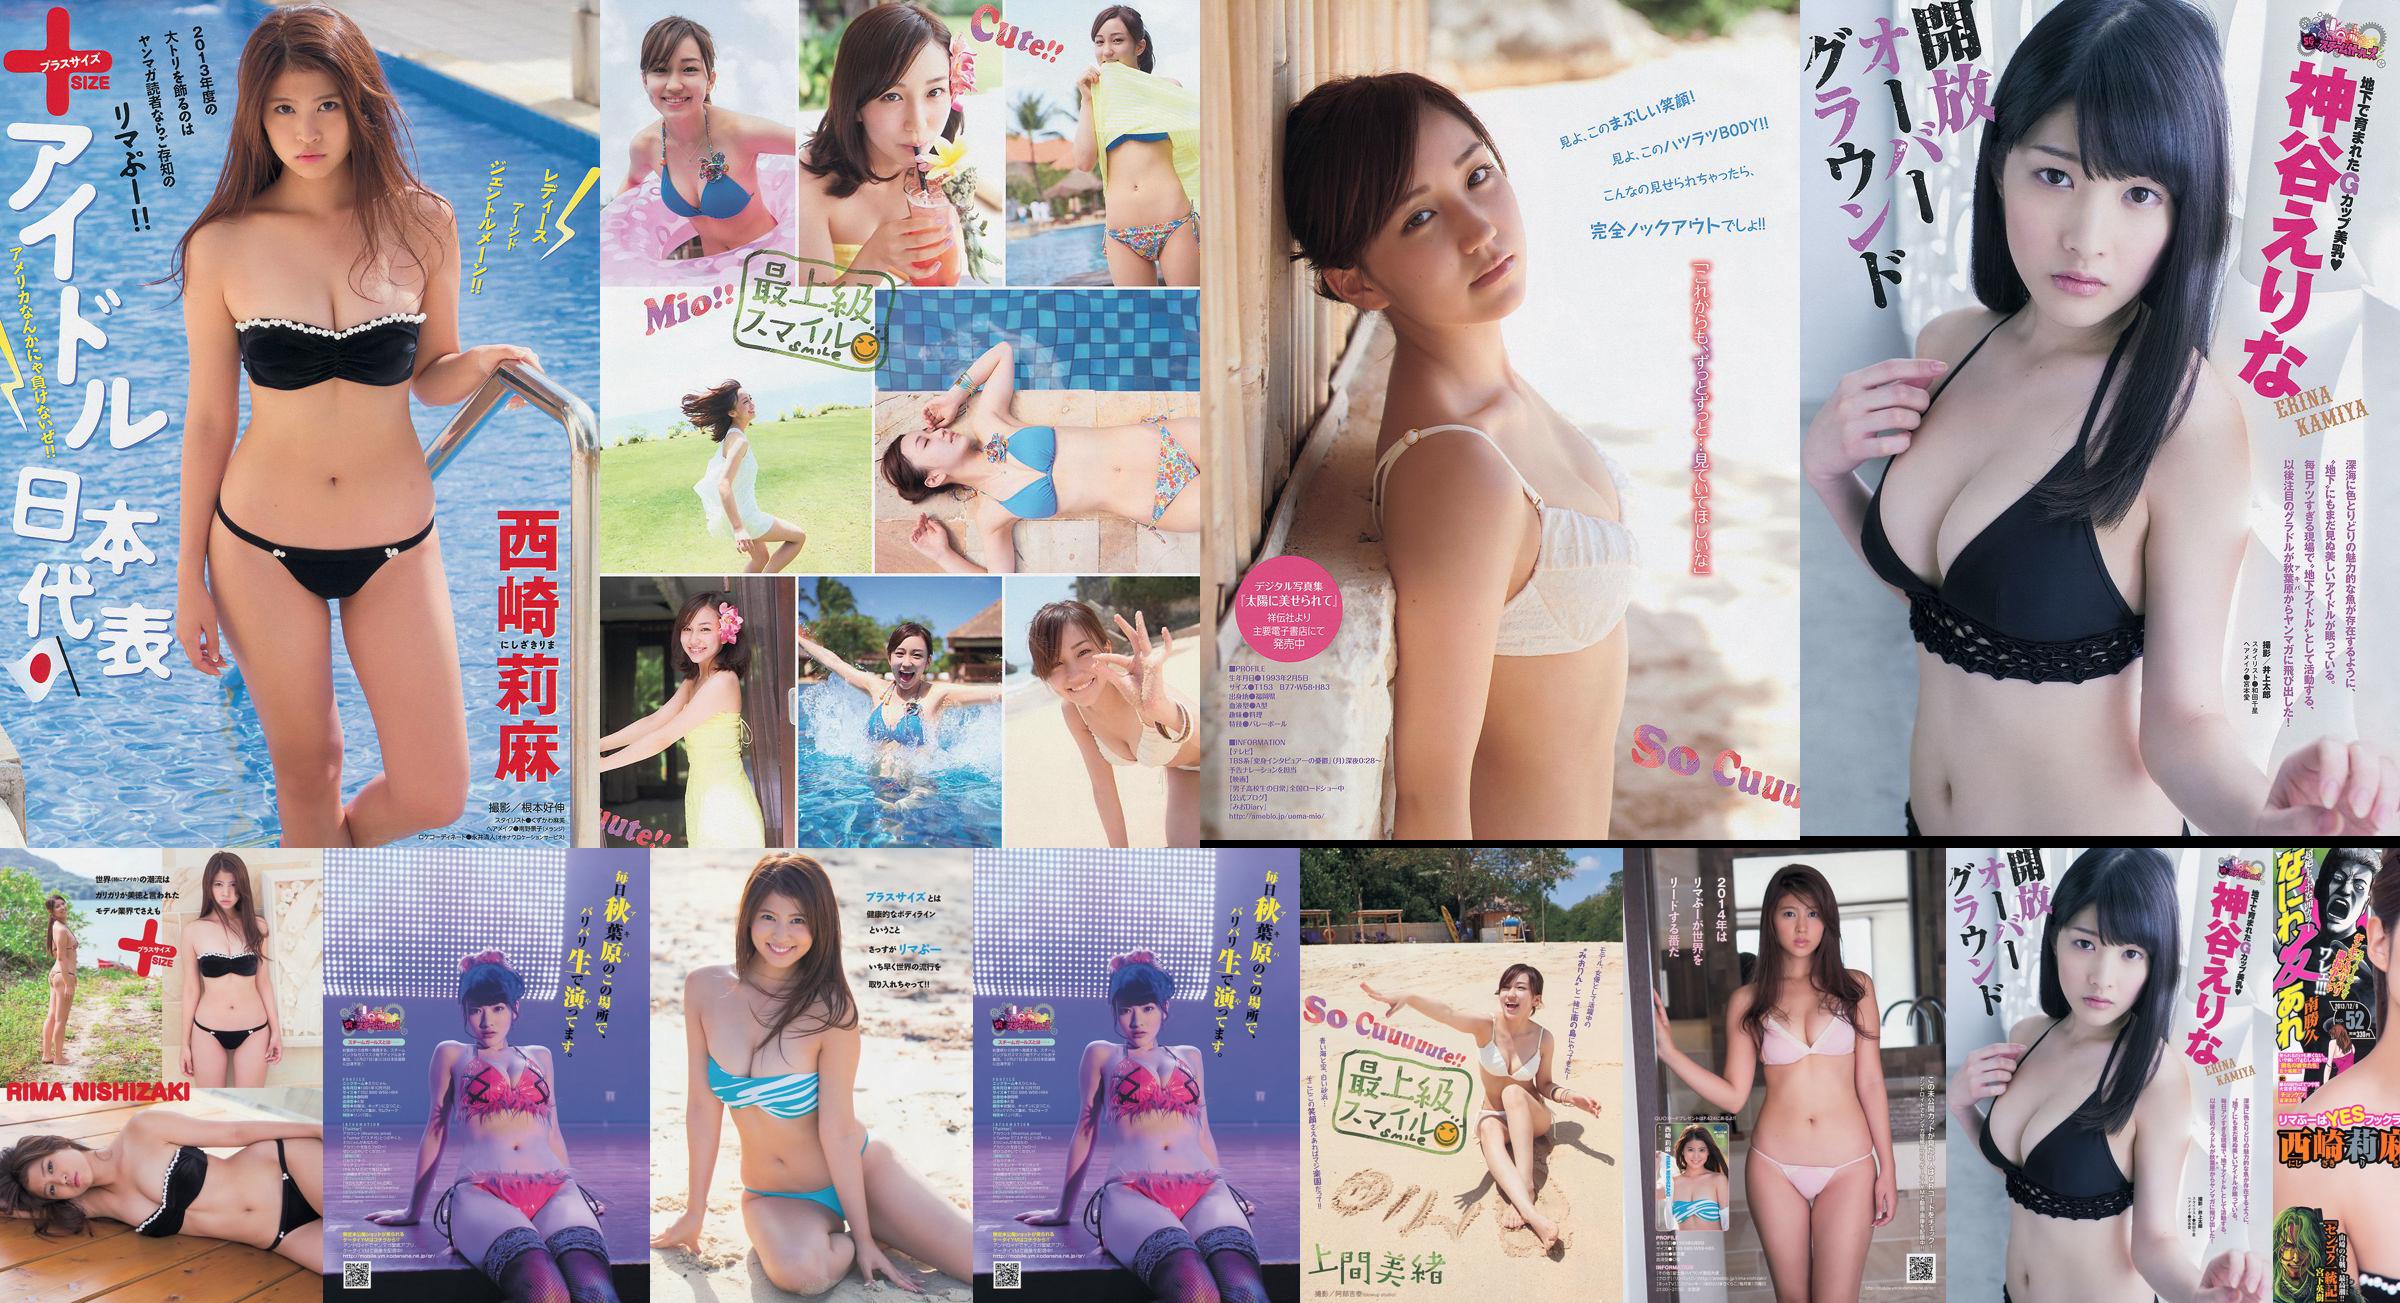 [Magazyn Młodych] Rima Nishizaki Mio Uema Erina Kamiya 2013 No.52 Photo Moshi No.c14da2 Strona 2